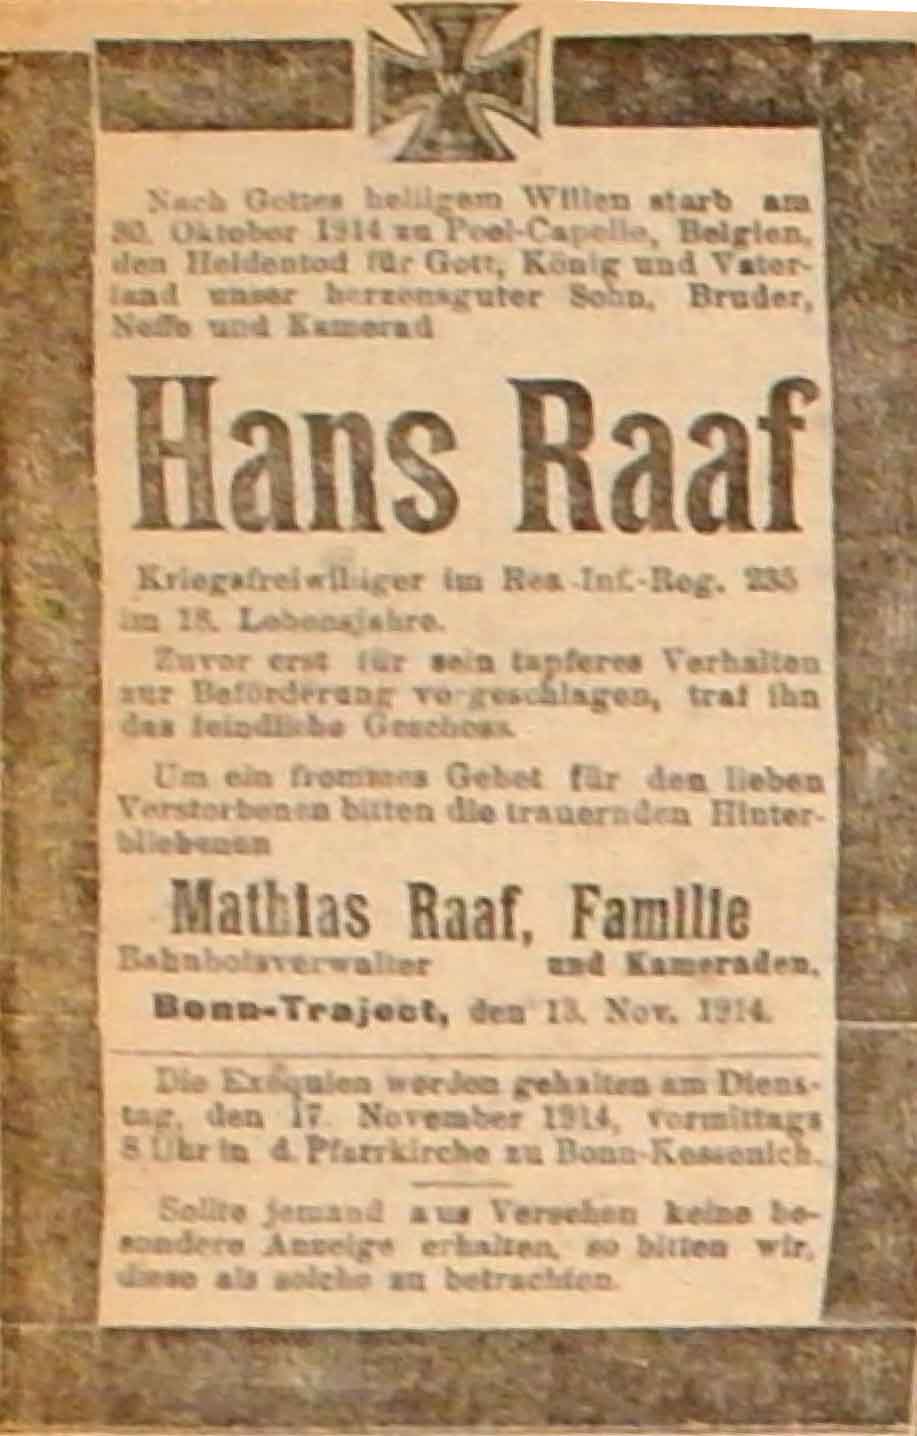 Anzeige in der Deutschen Reichs-Zeitung vom 14. November 1914